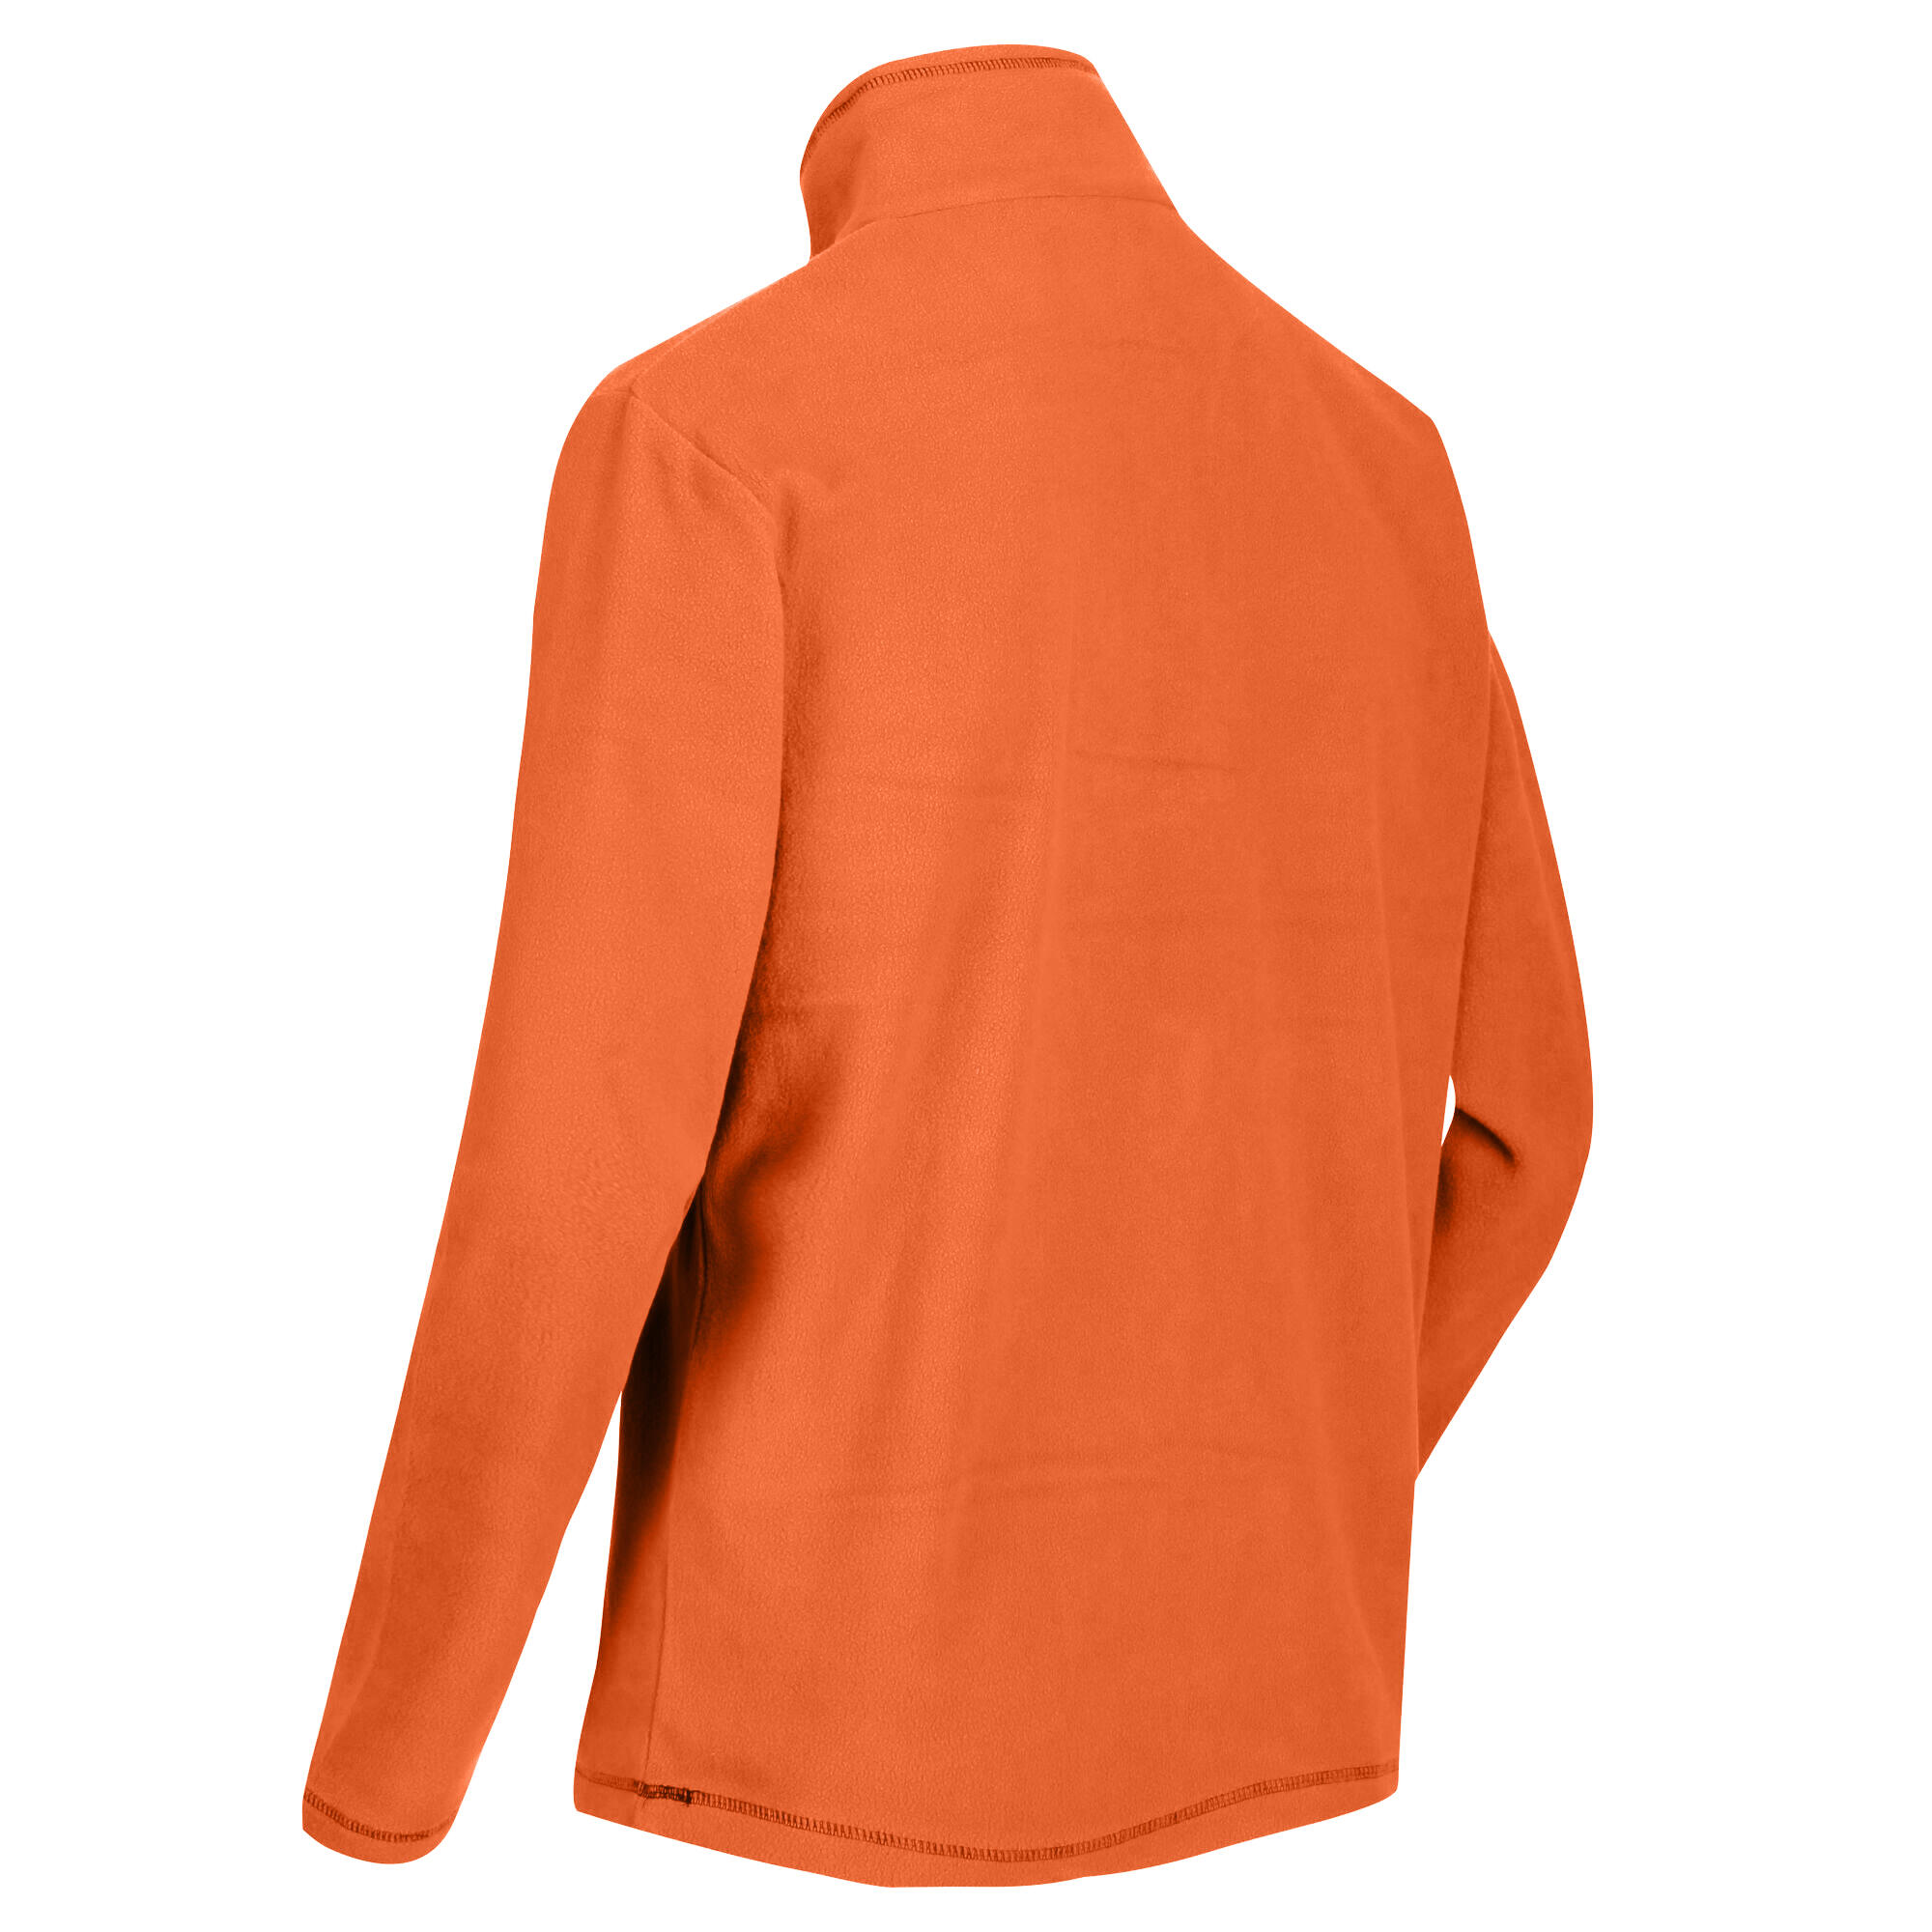 Great Outdoors Mens Thompson Half Zip Fleece Top (Burnt Orange) 4/5